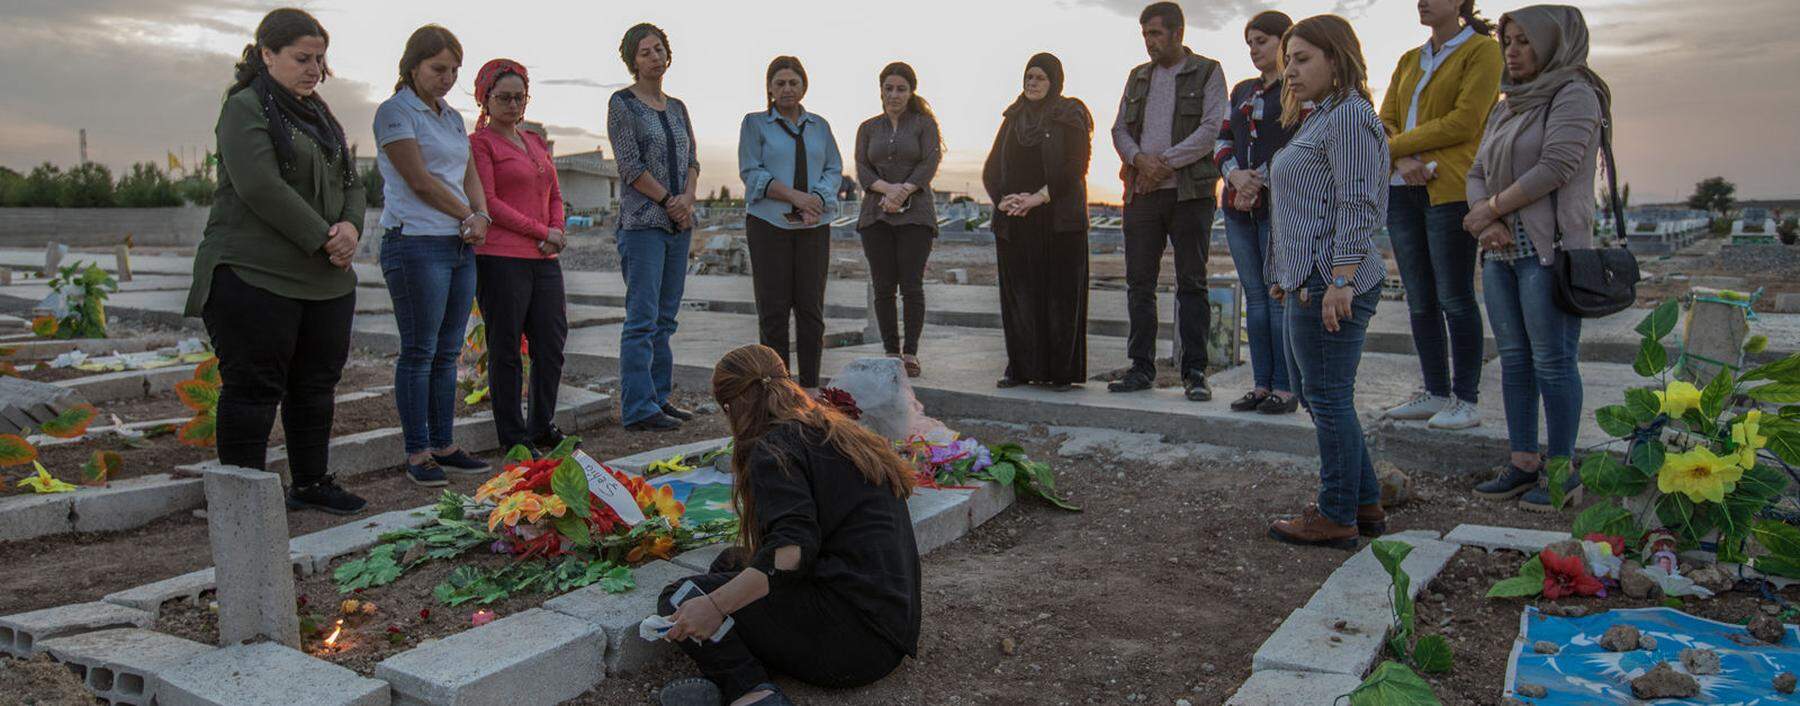 Trauer am Grab von Havrin Khalaf. Ihre Mutter und Freundinnen gedenken der ermordeten nordsyrischen Aktivistin. 